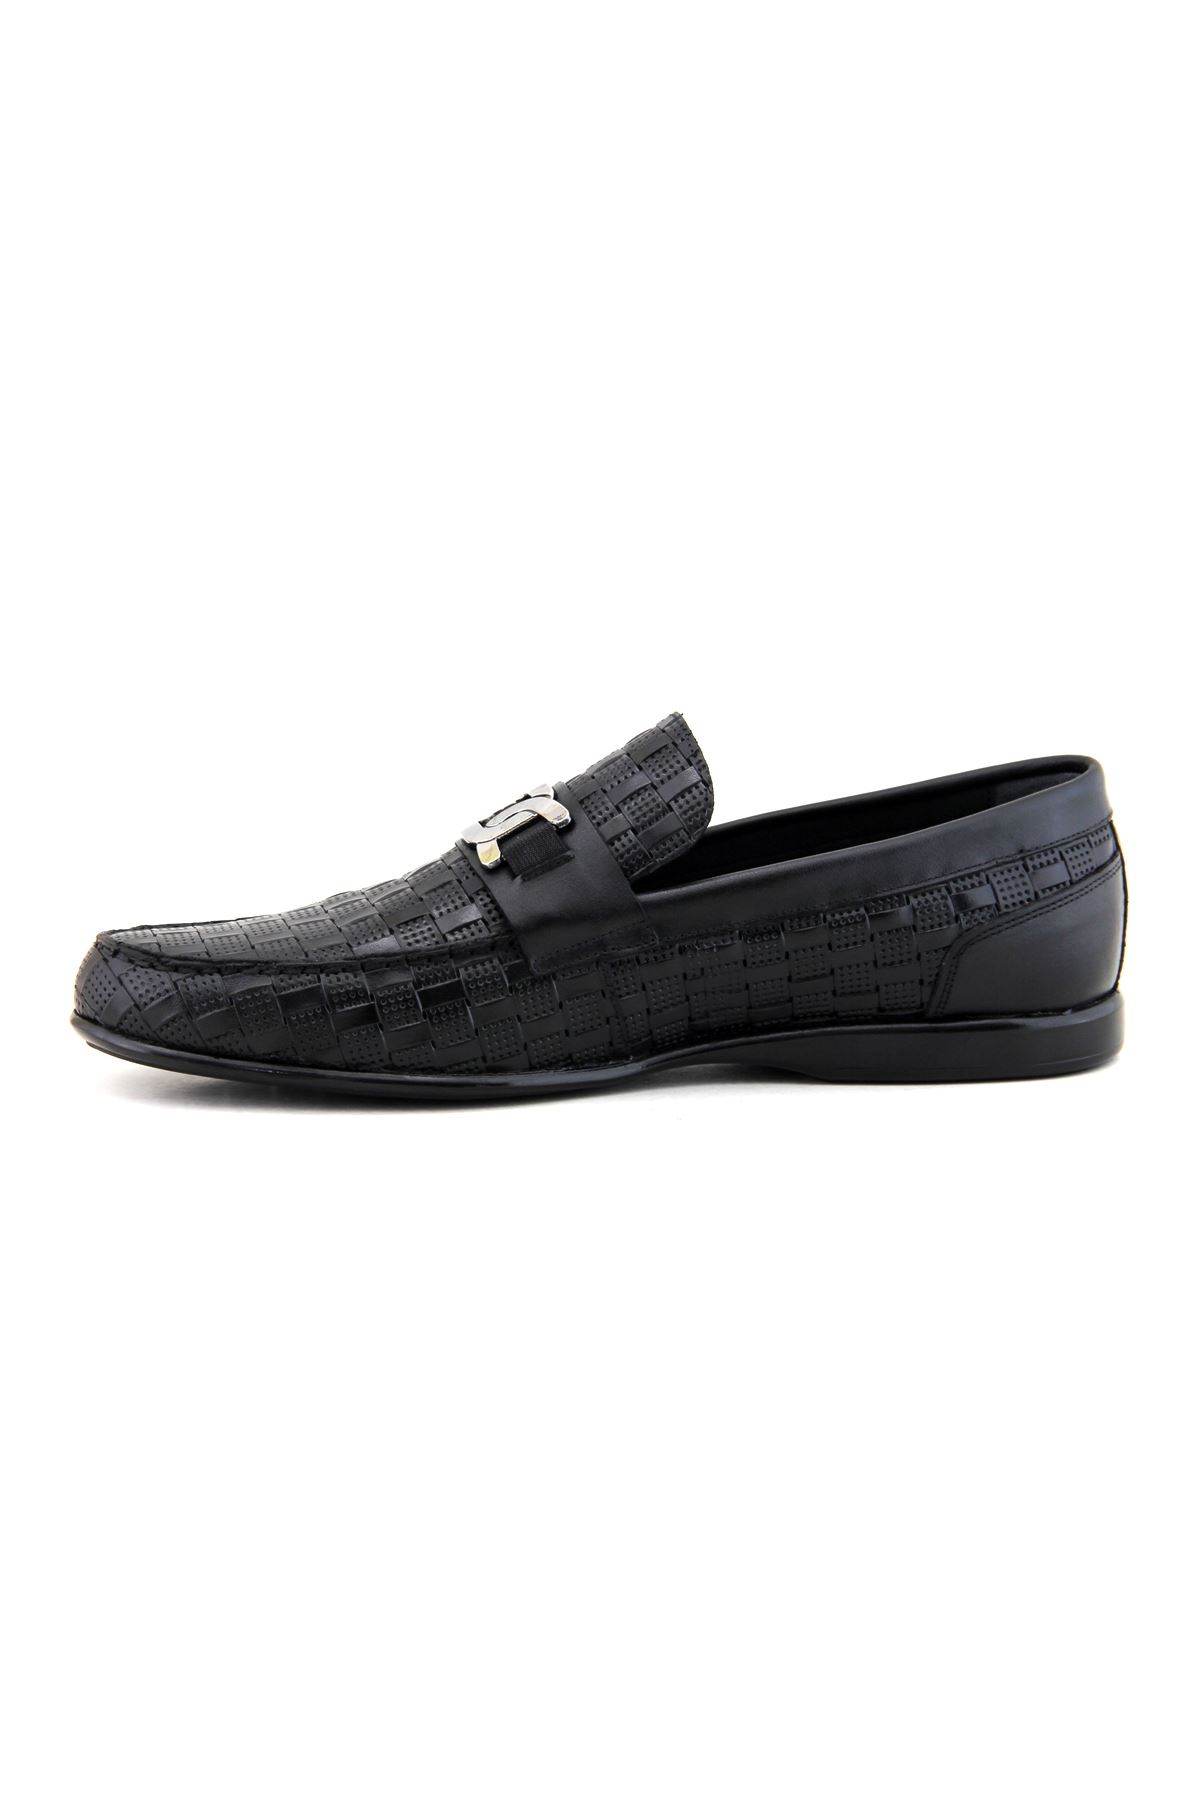 Fosco 2919 Hakiki Deri Erkek Ayakkabı - Siyah